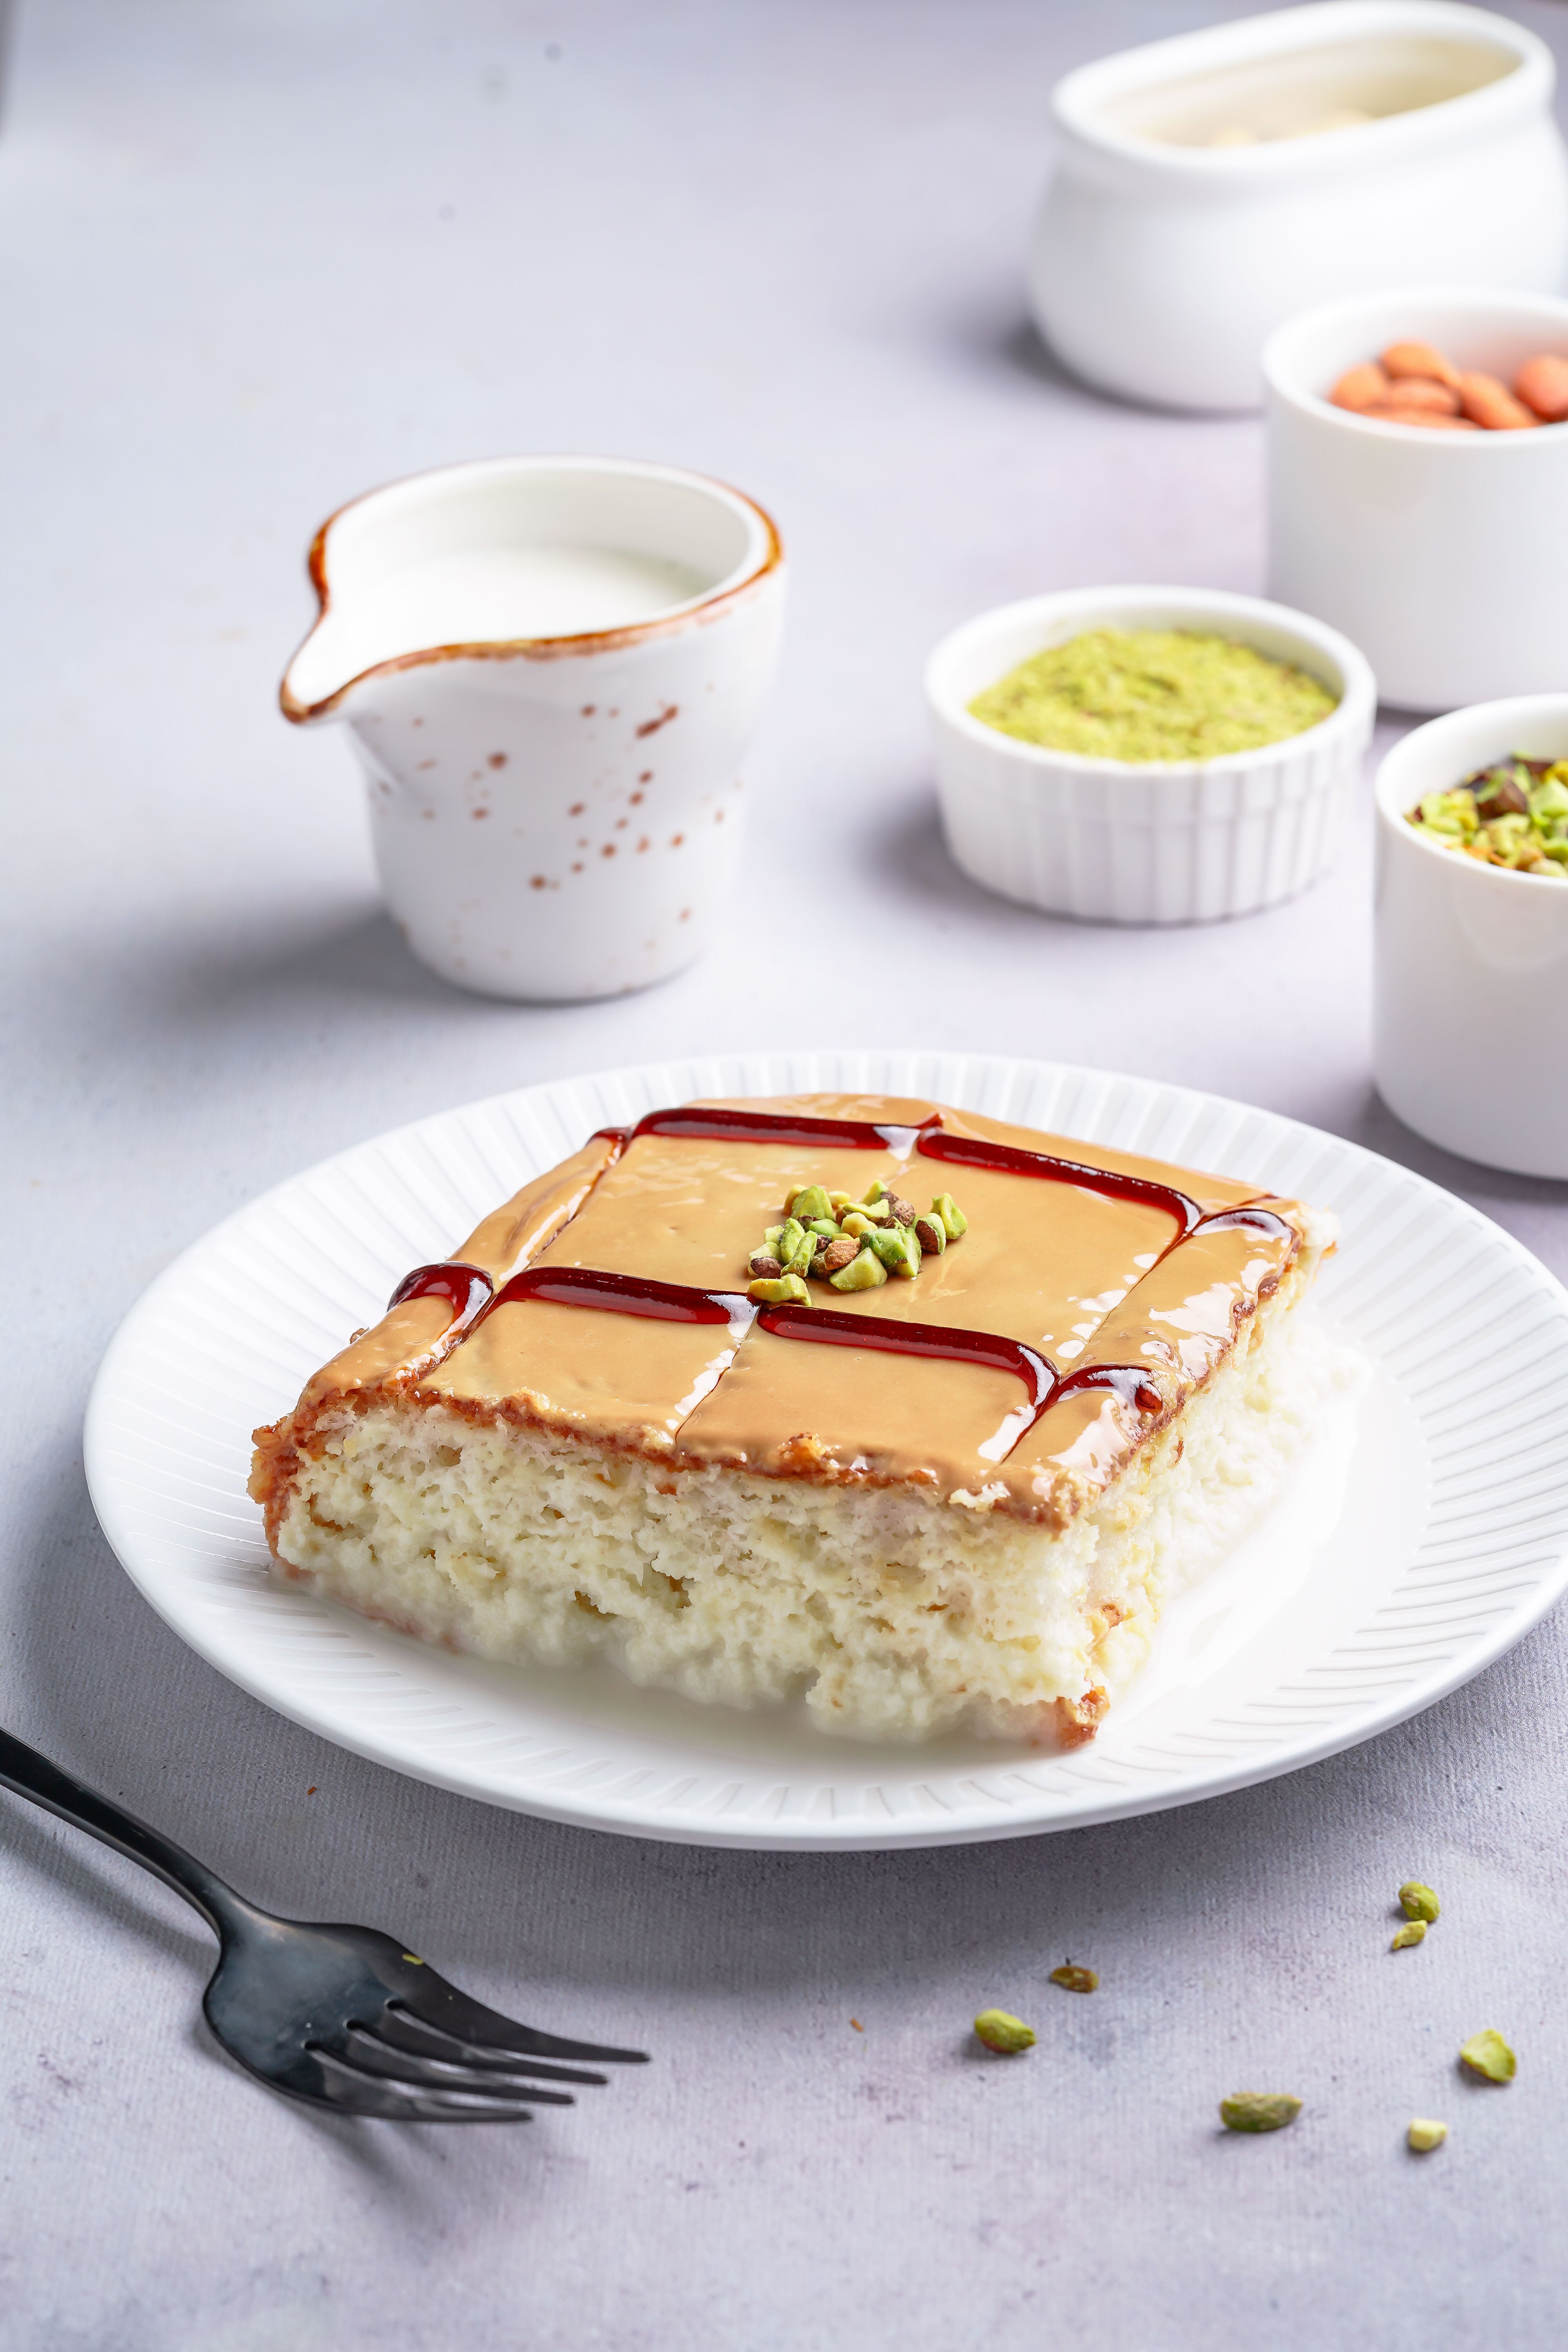 Rose & pistachio milk cake | Jamie Oliver recipes